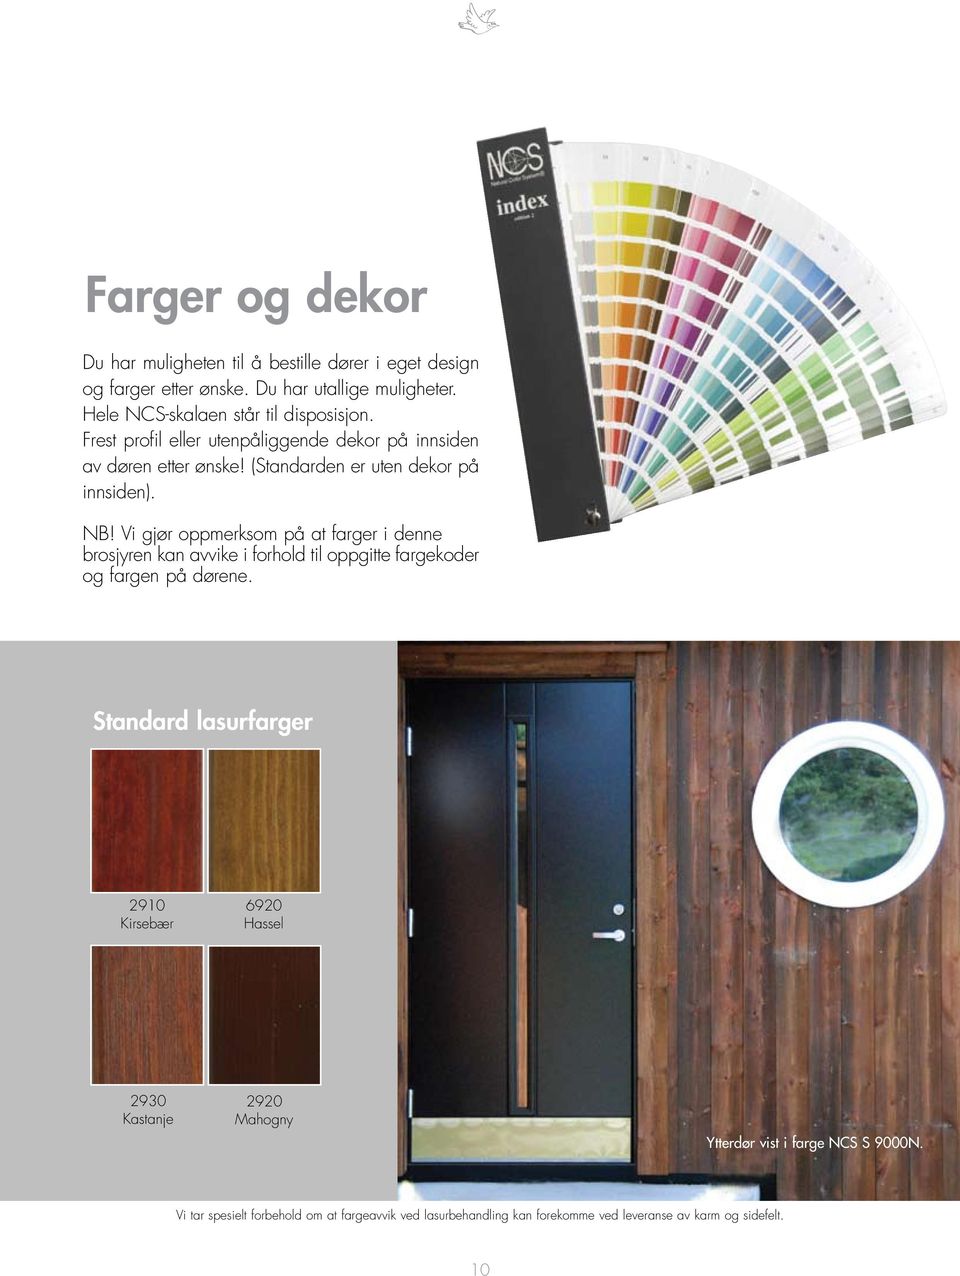 NB! Vi gjør oppmerksom på at farger i denne brosjyren kan avvike i forhold til oppgitte fargekoder og fargen på dørene.